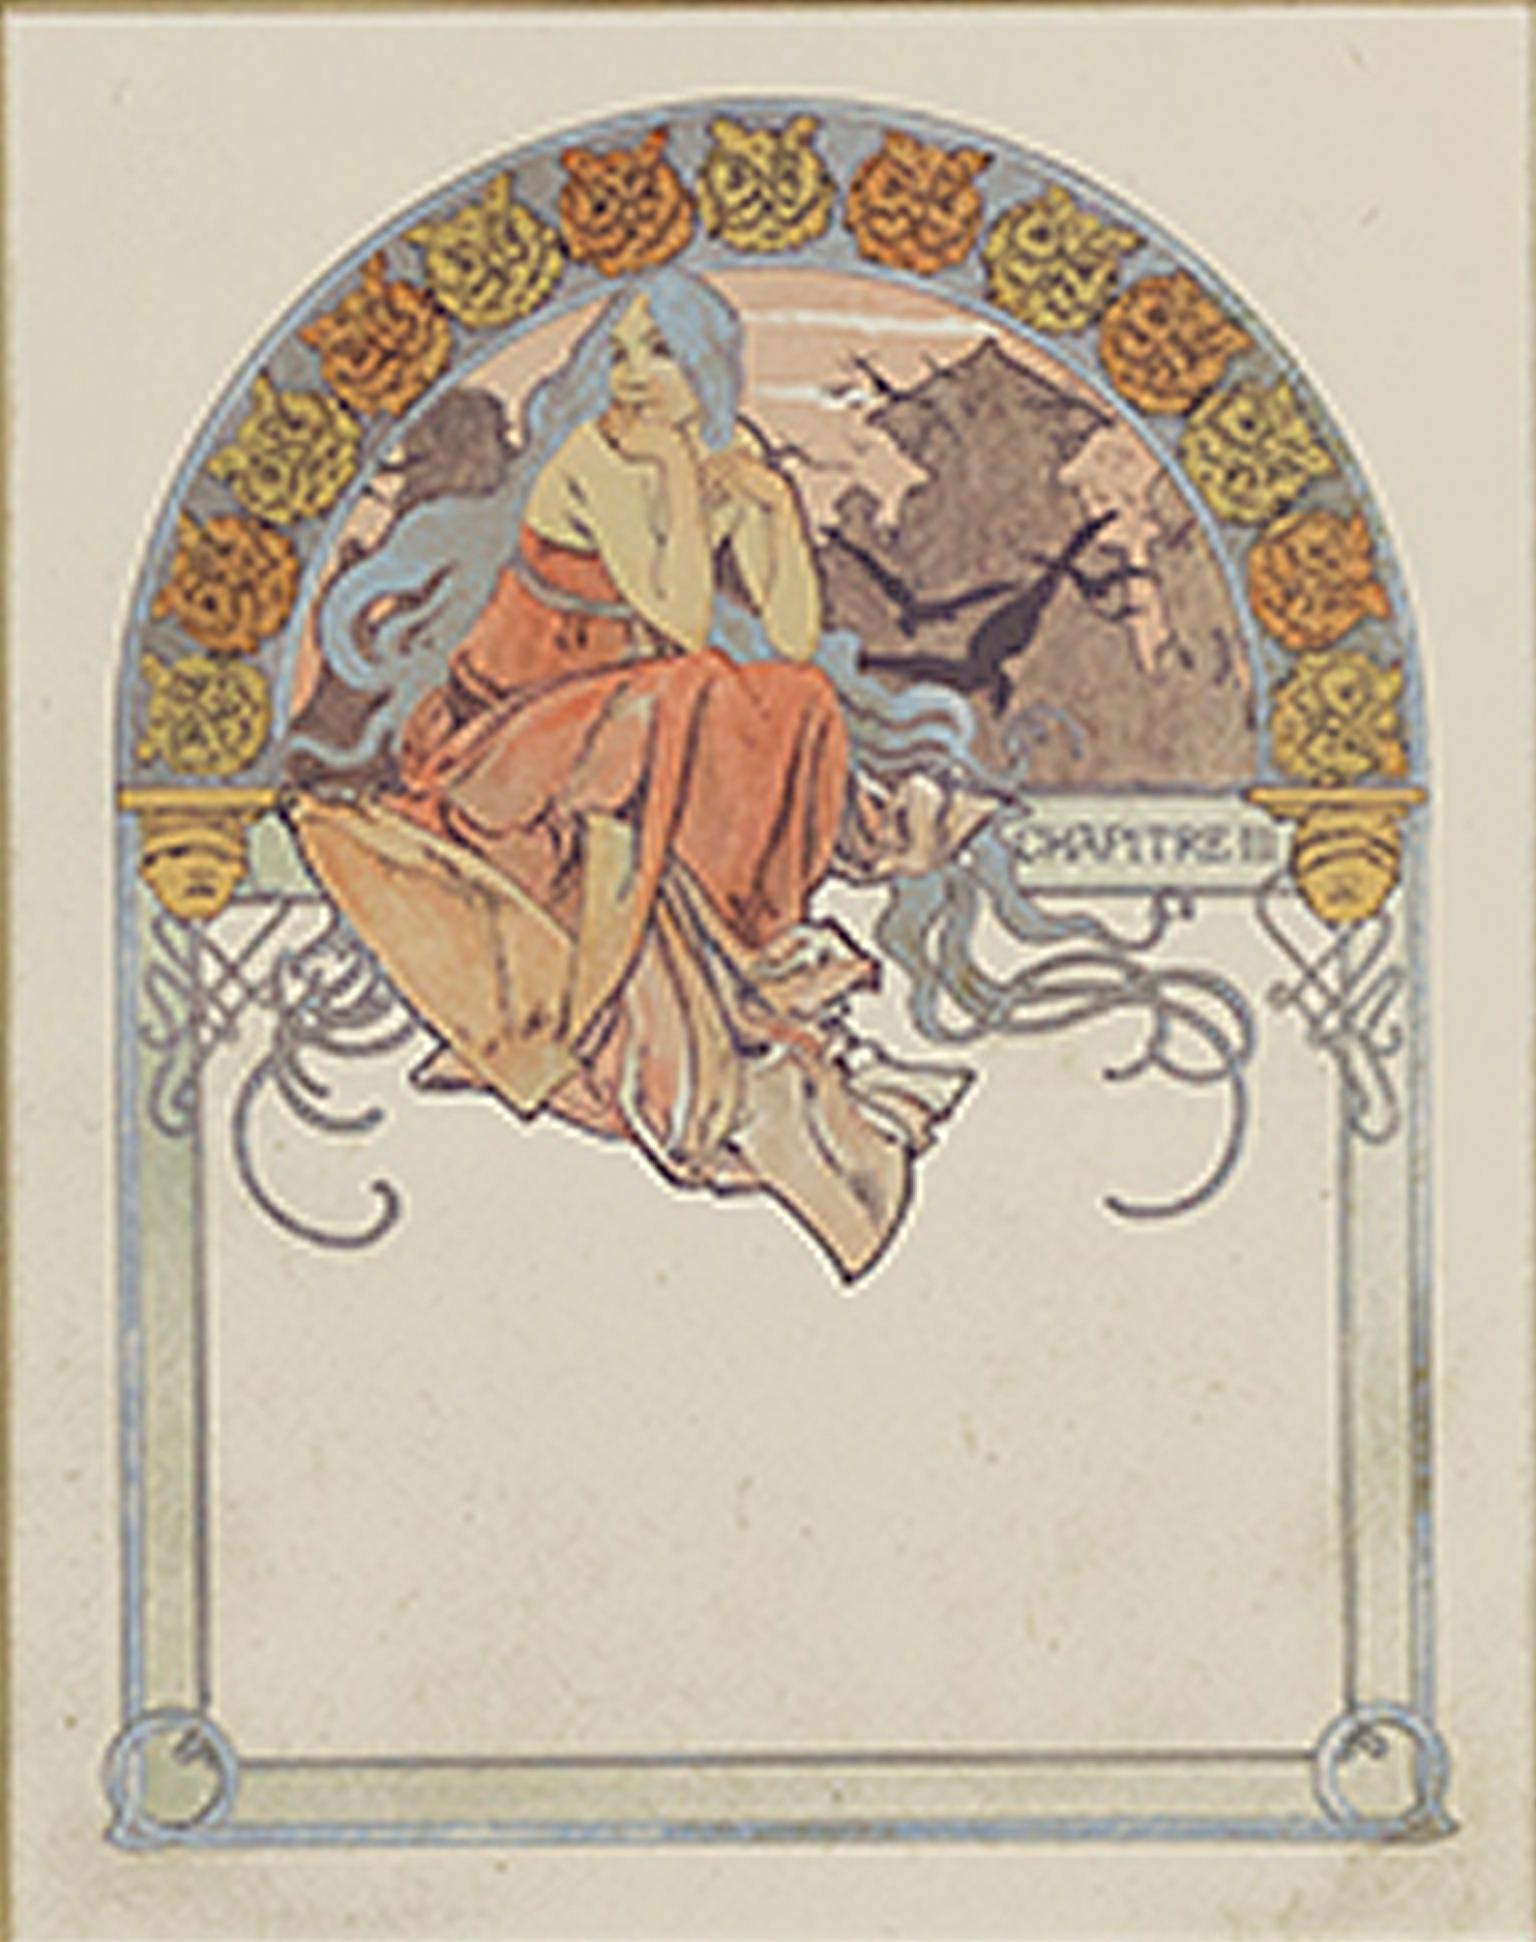 Farblithographie des späten 19. Jahrhunderts, Art nouveau-Stil, Eule-Rand, Frauenfigur  – Print von Alphonse Mucha